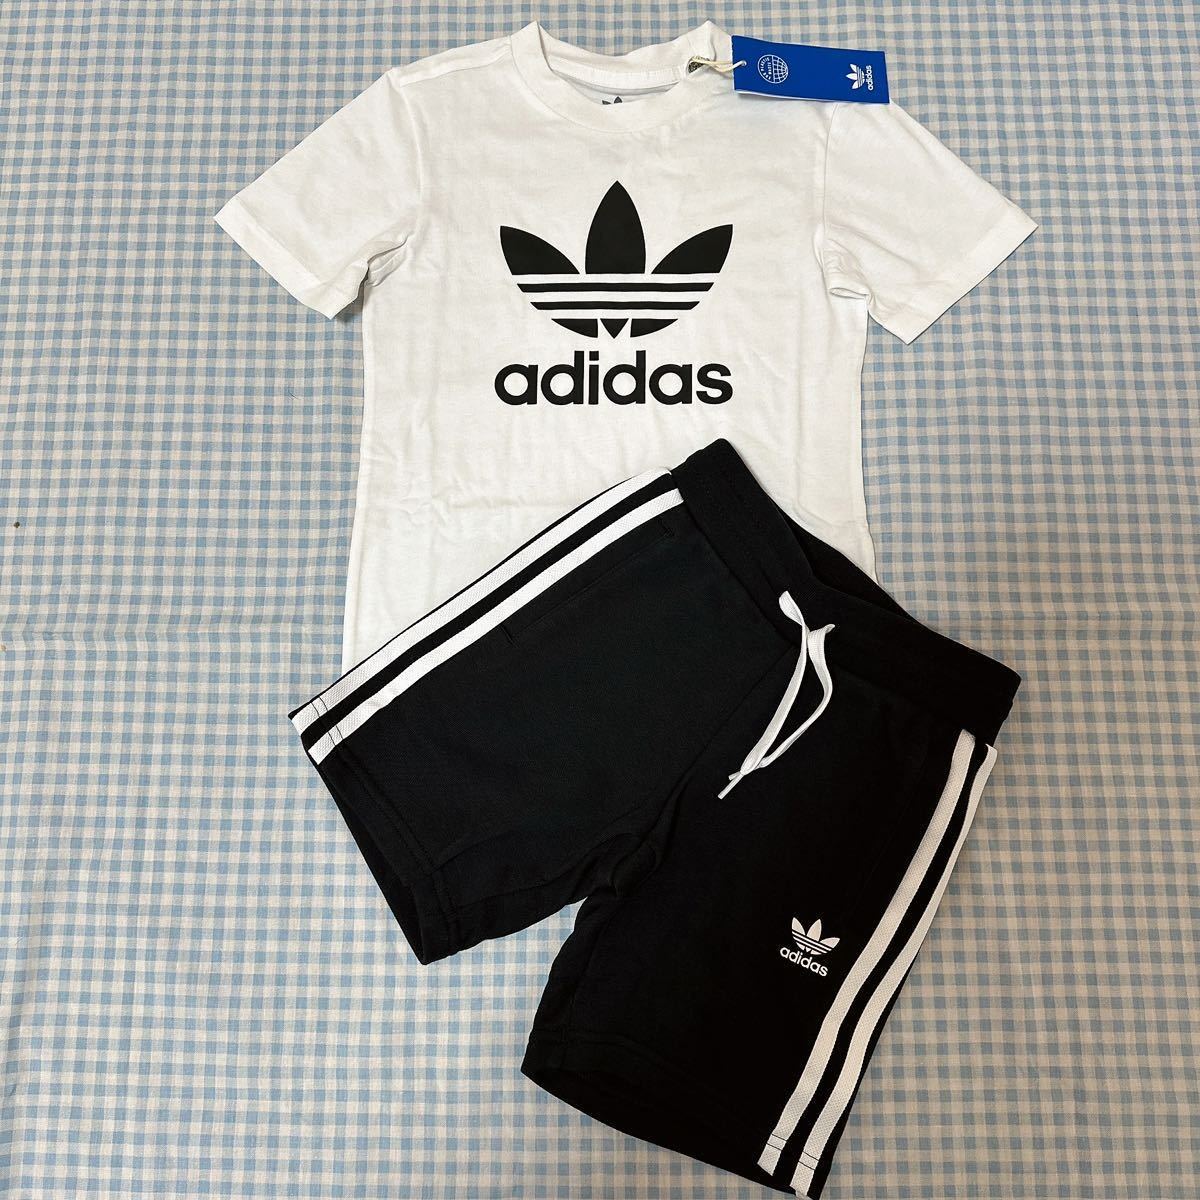  новый товар обычная цена 6270 иен Adidas Originals to зеркальный . il короткий рукав футболка шорты комплект 110 adidas хлопок 100% HK2968